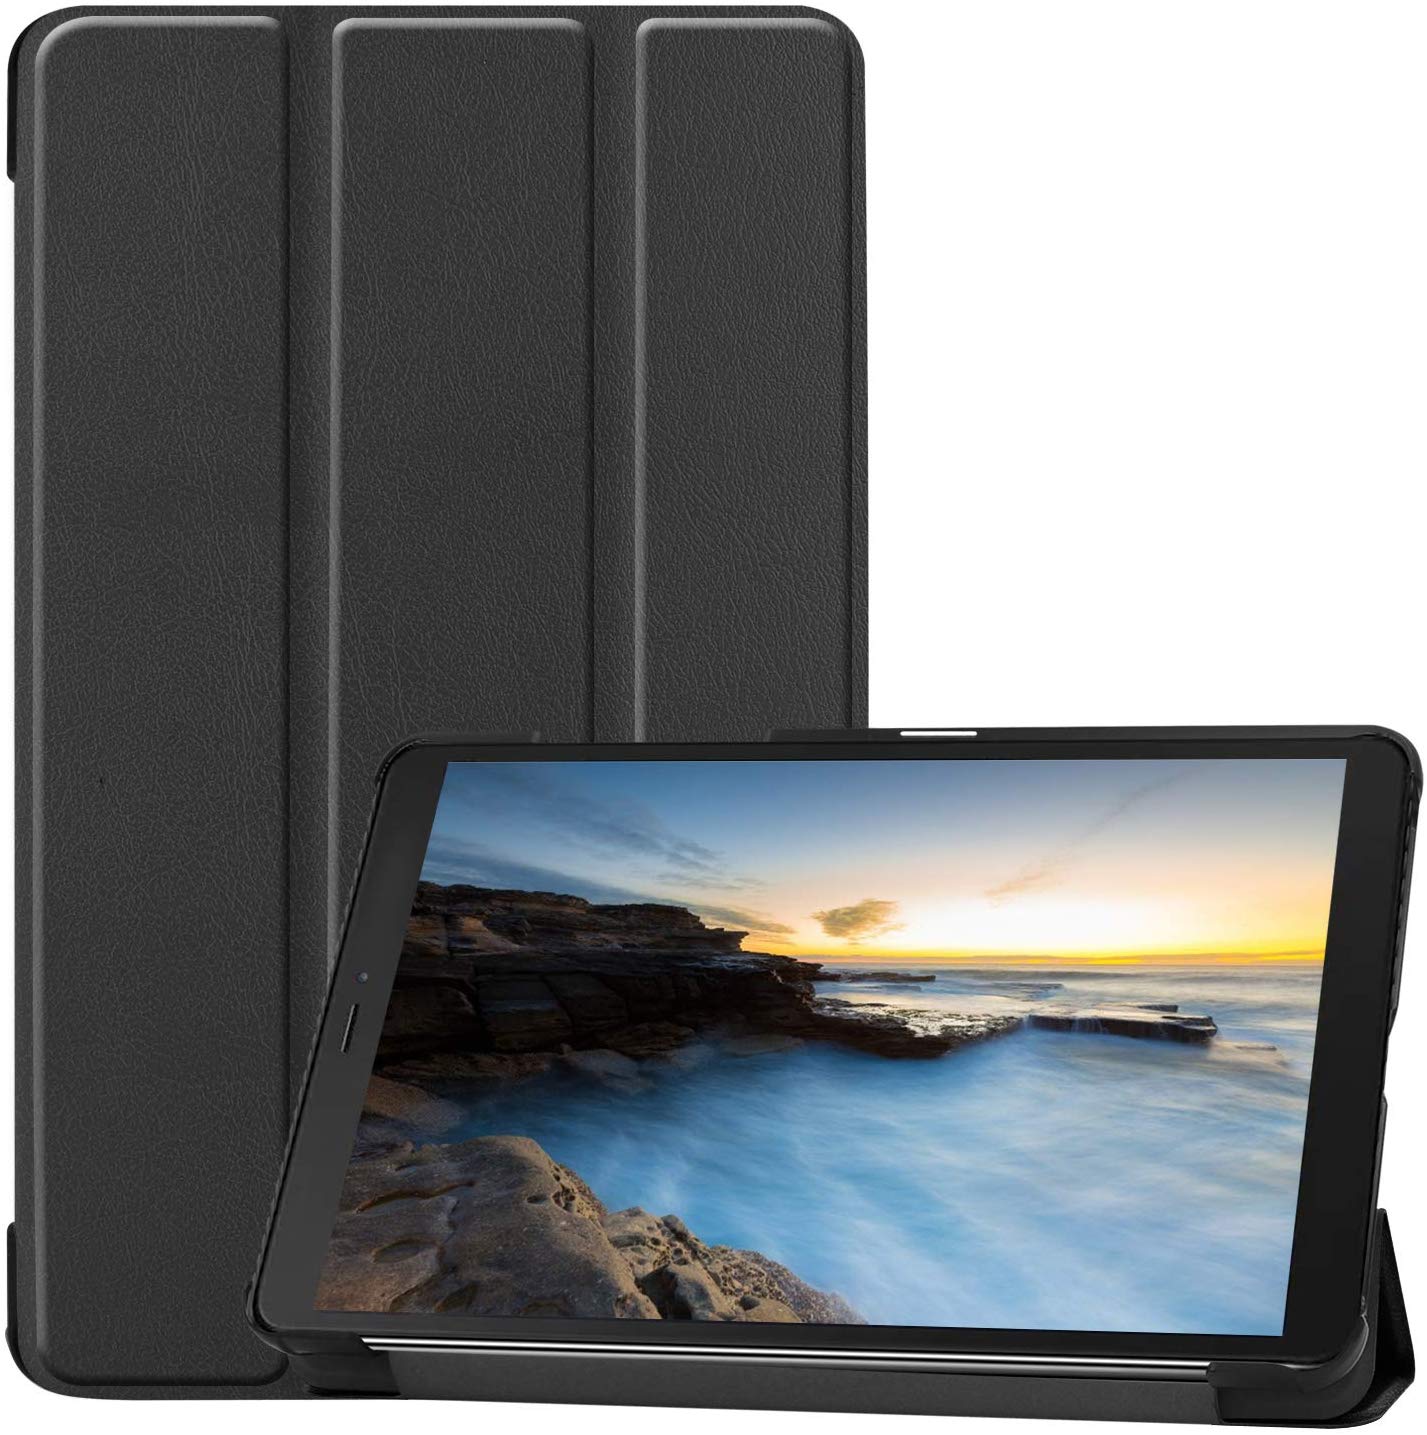 Funda para Galaxy Tab A 8.0 2019 T290 T295 (función atril), color negro